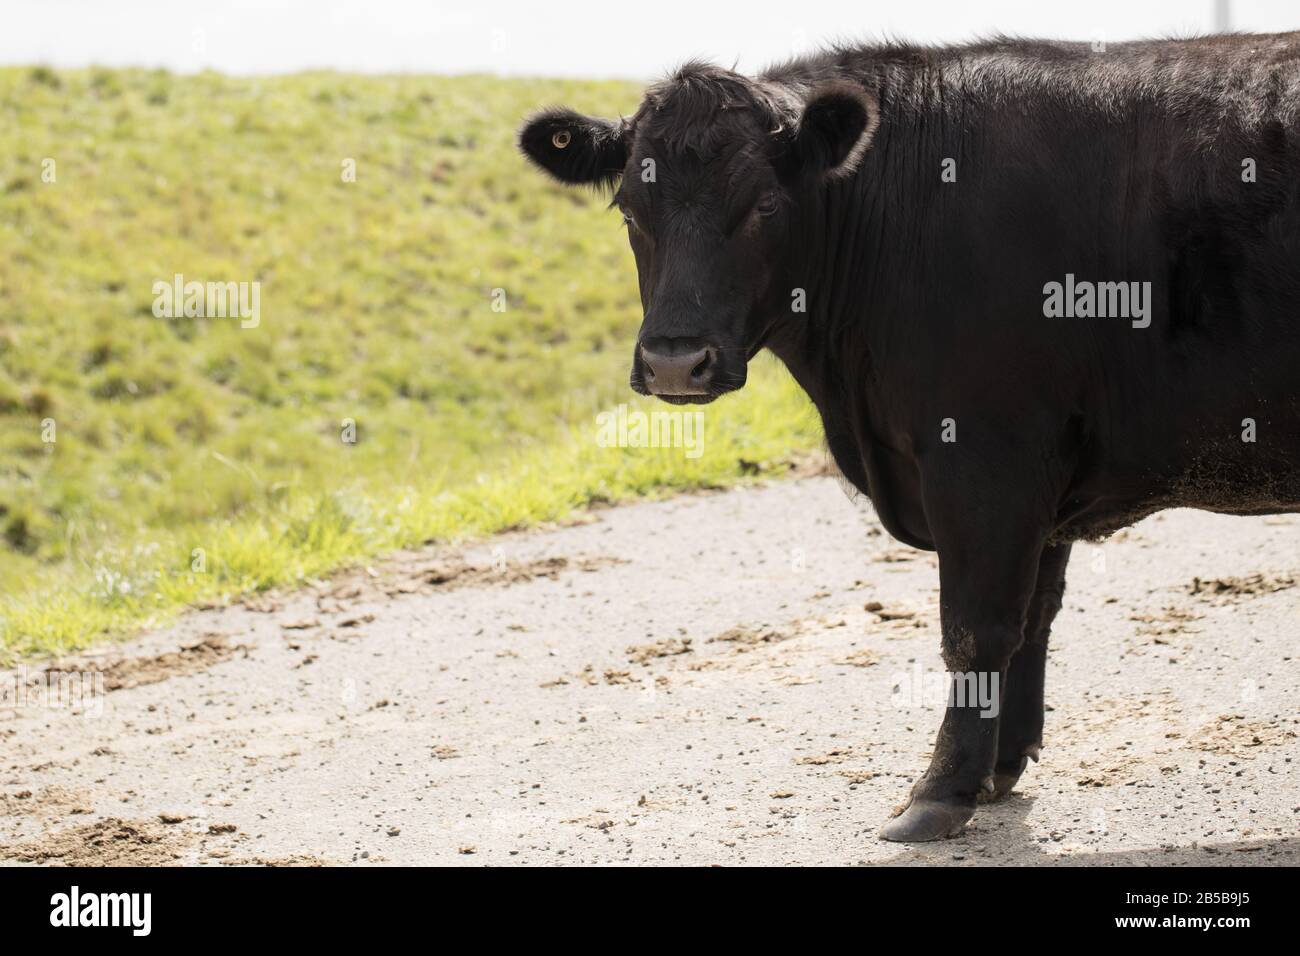 Vache noire (Bos taurus) sur une ferme Banque D'Images